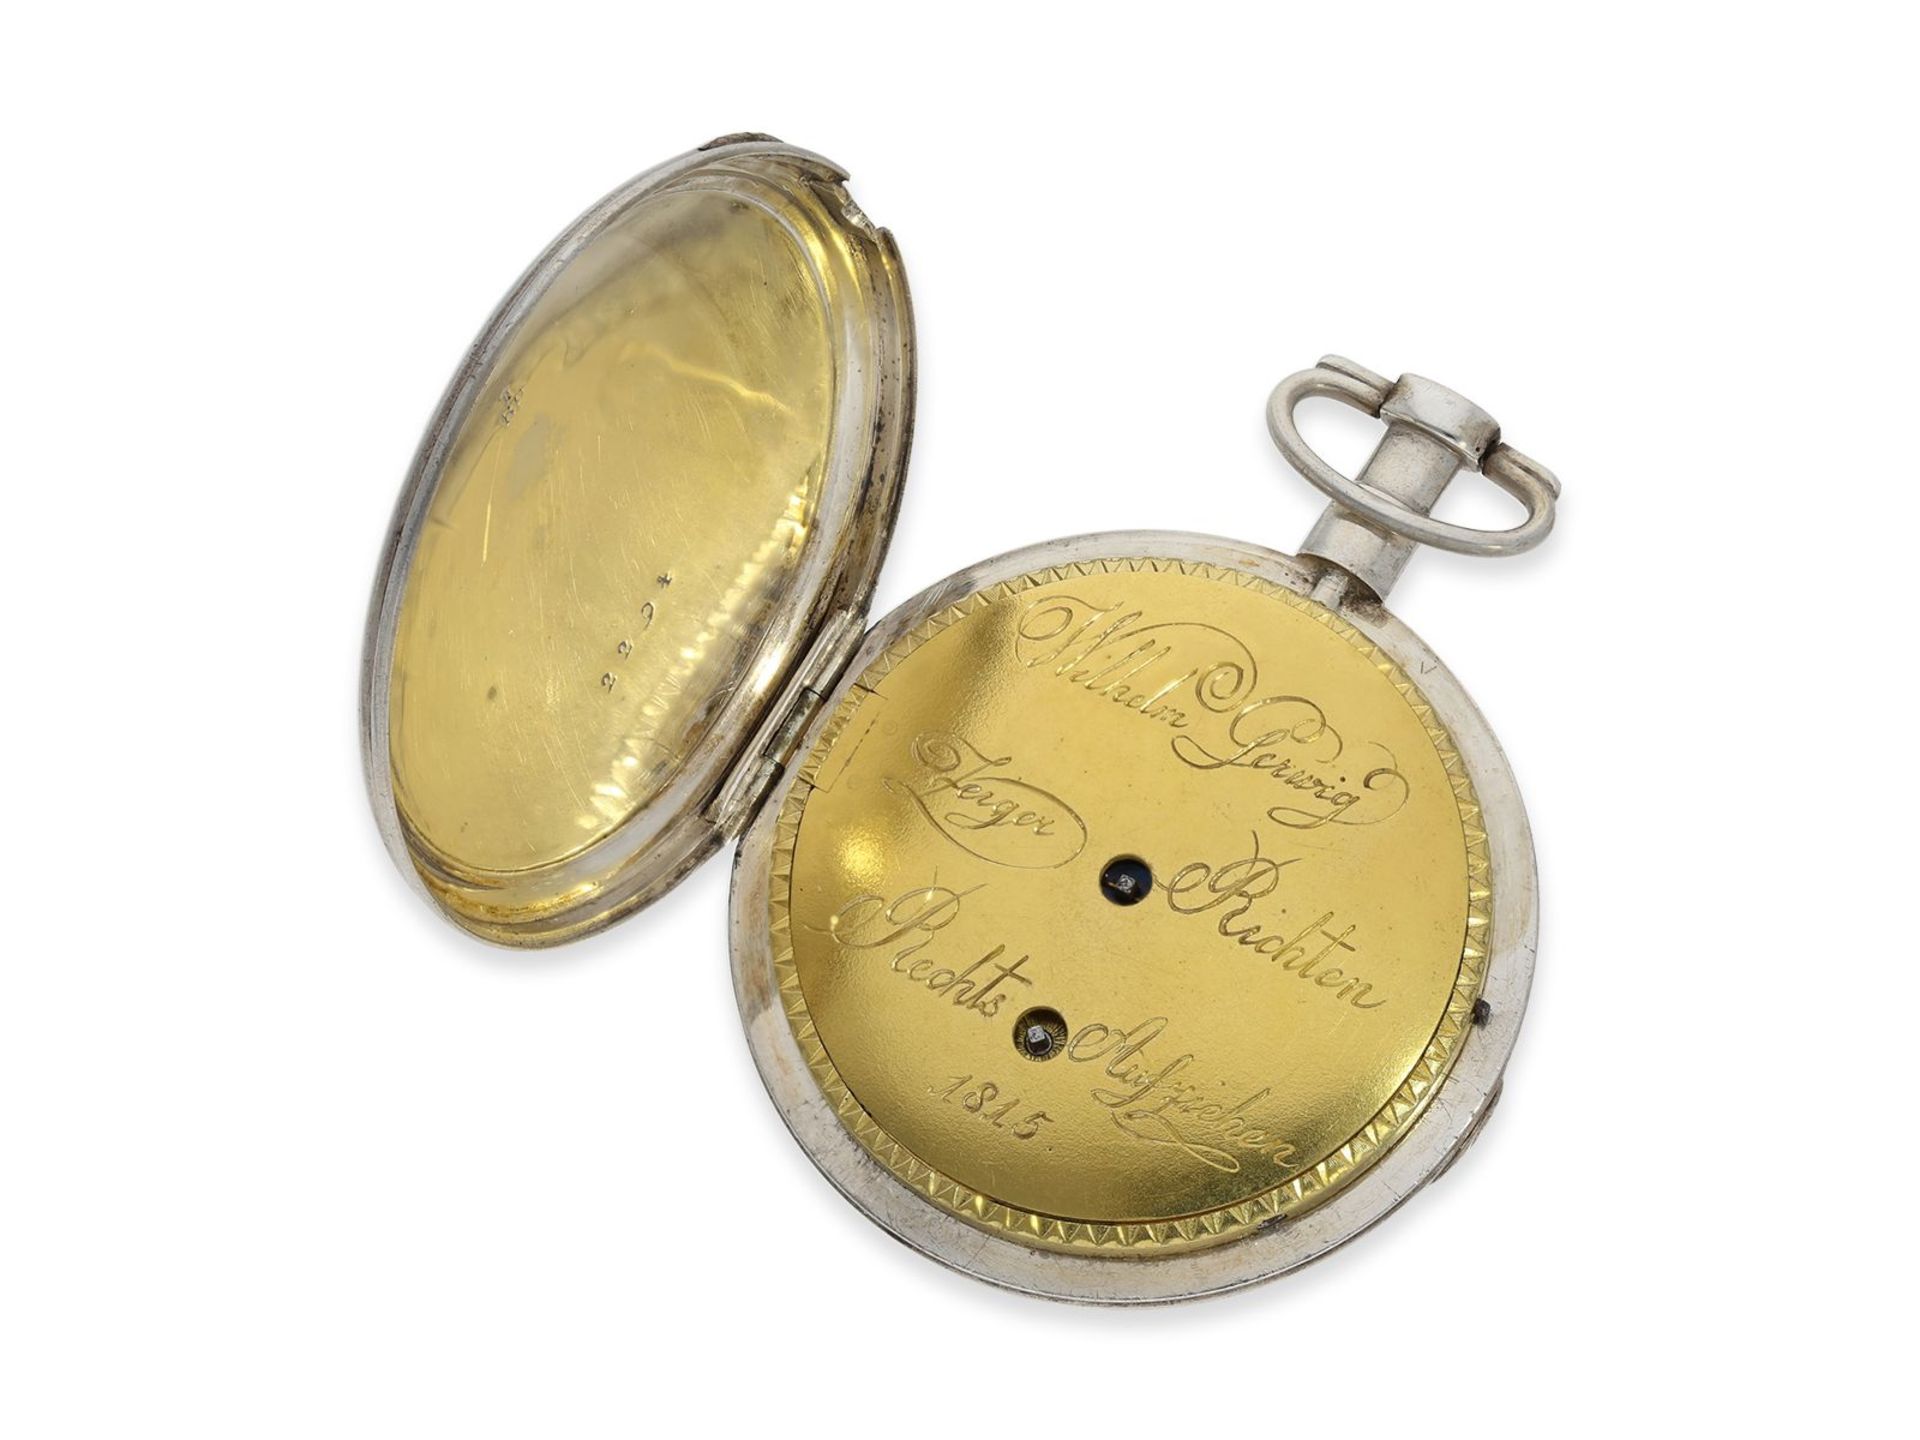 Taschenuhr: sehr interessante deutsche Zylinderuhr mit sehr seltenem Kaliber, signiert Wilhelm - Bild 2 aus 5